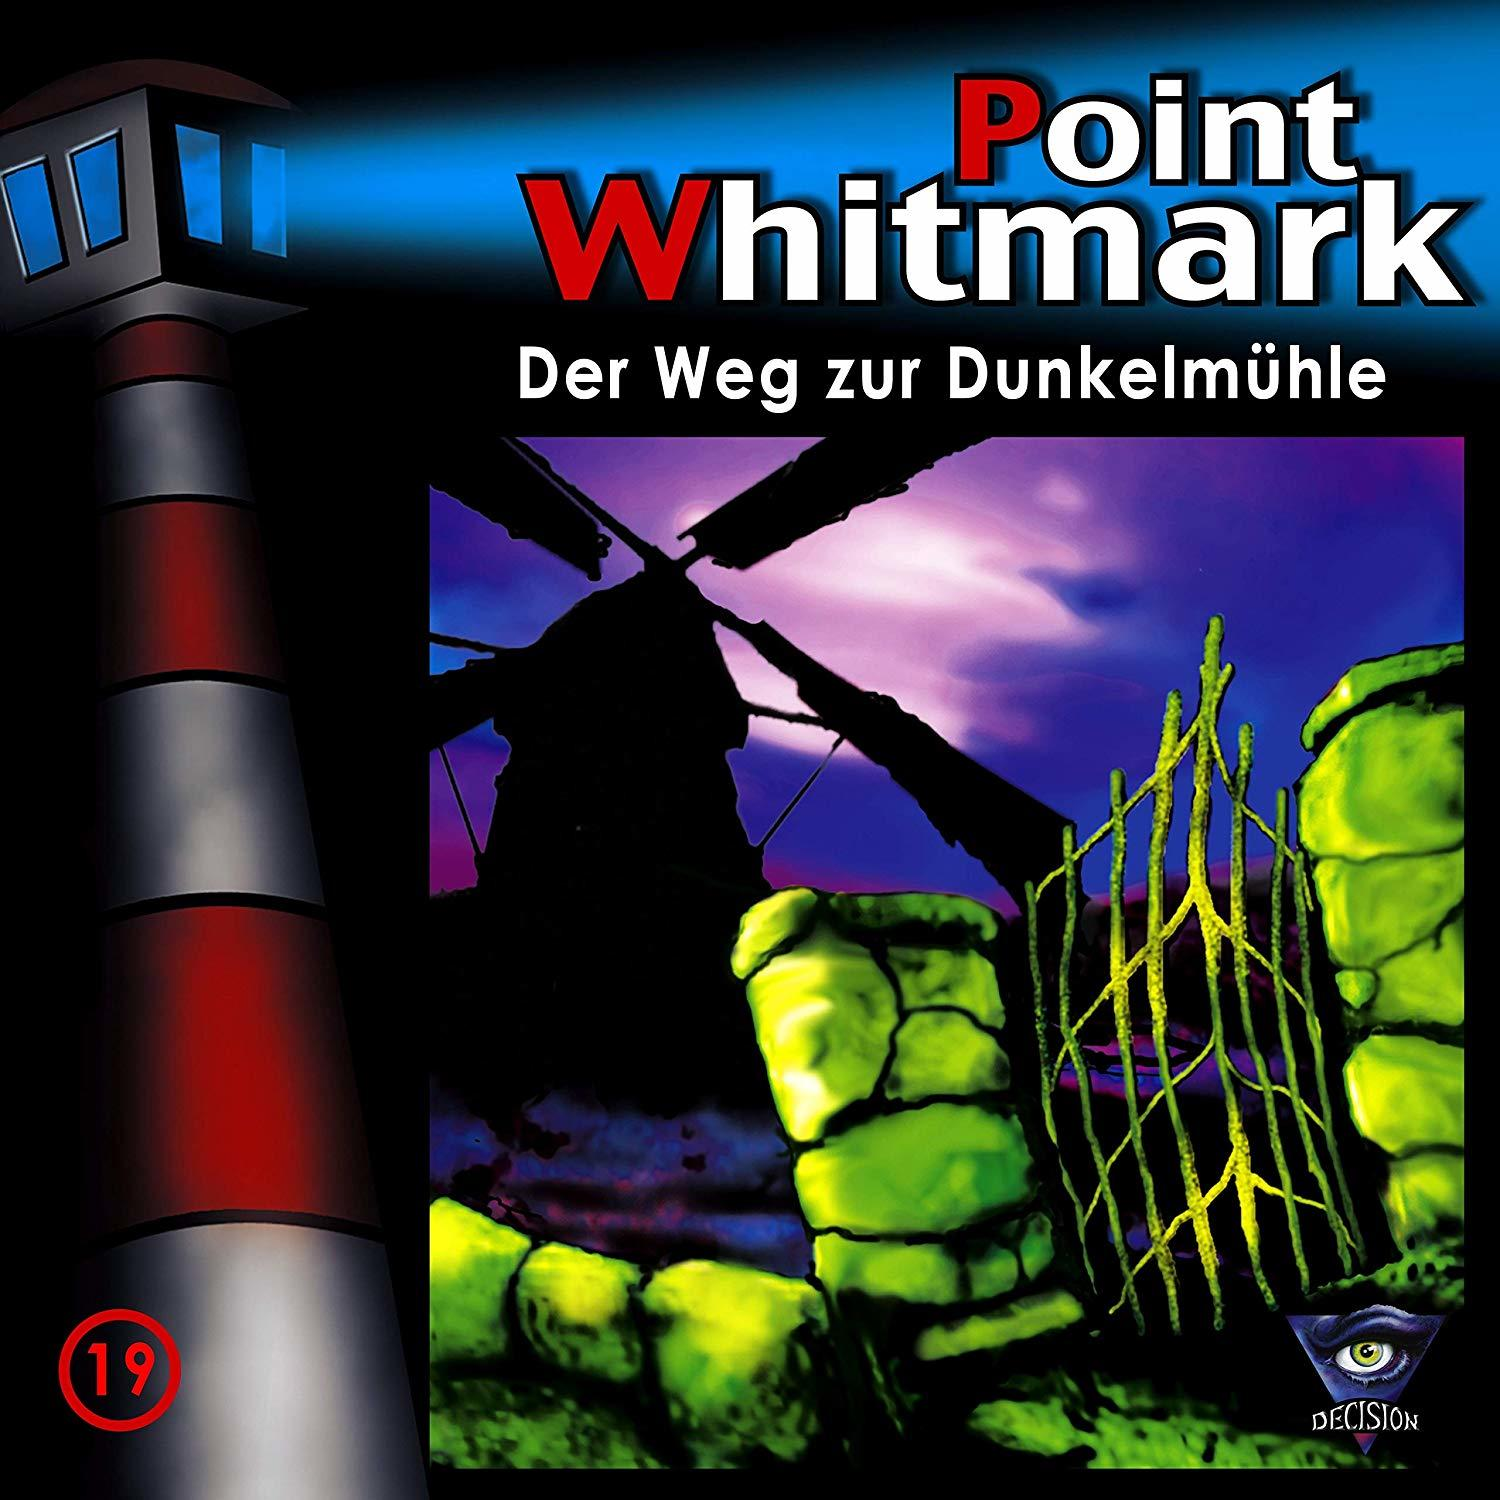 Dunkelmühle zur Whitmark Point Weg - 19/Der (CD) -